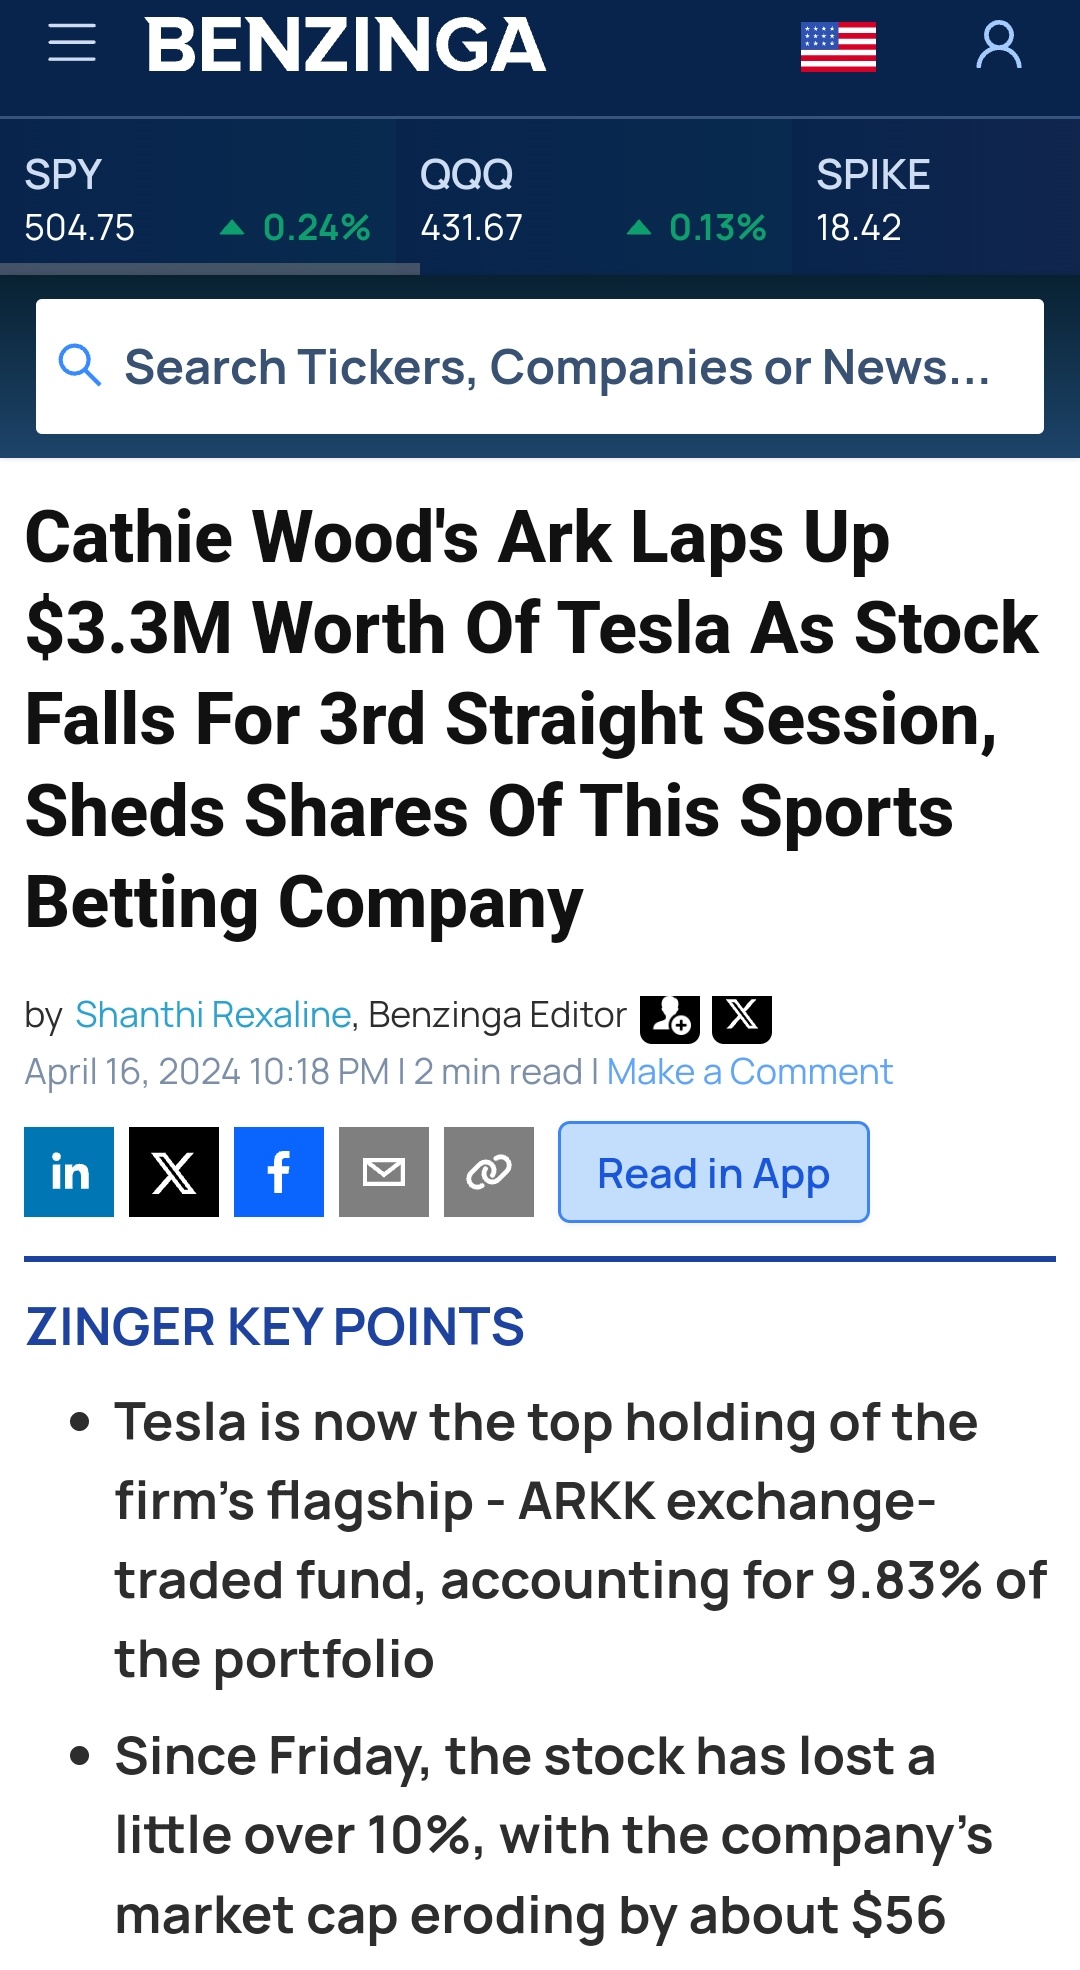 キャシーウッドのArkは、株価が下落する中、3.3Mドル相当のテスラ株を大量に買い増しました